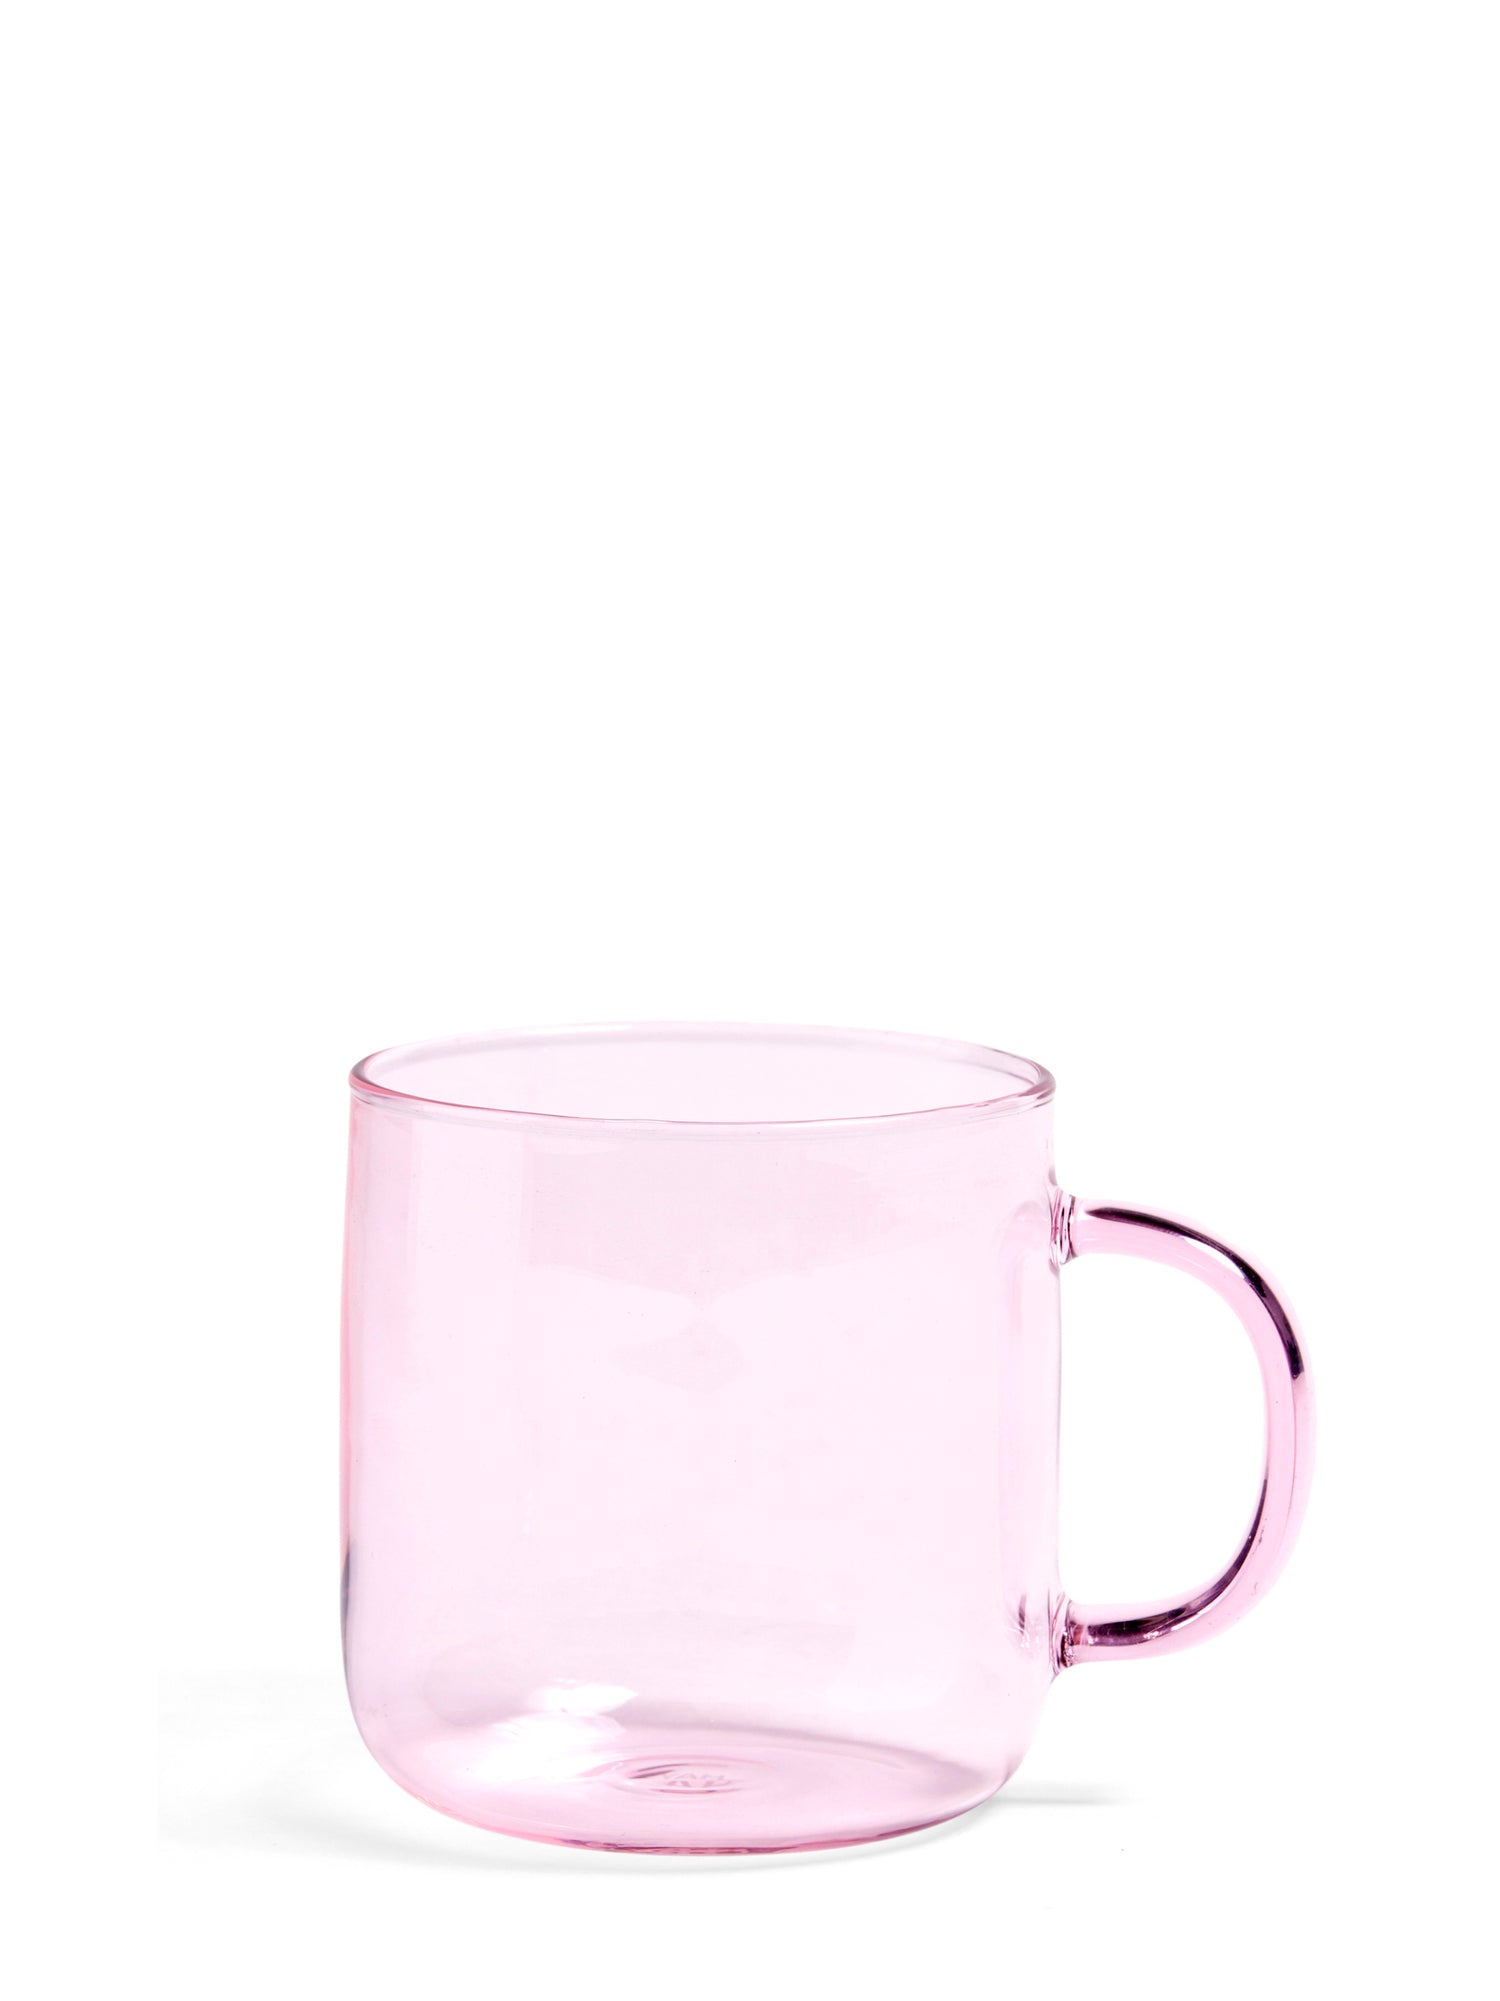 Coffee Mug, Pink Glass